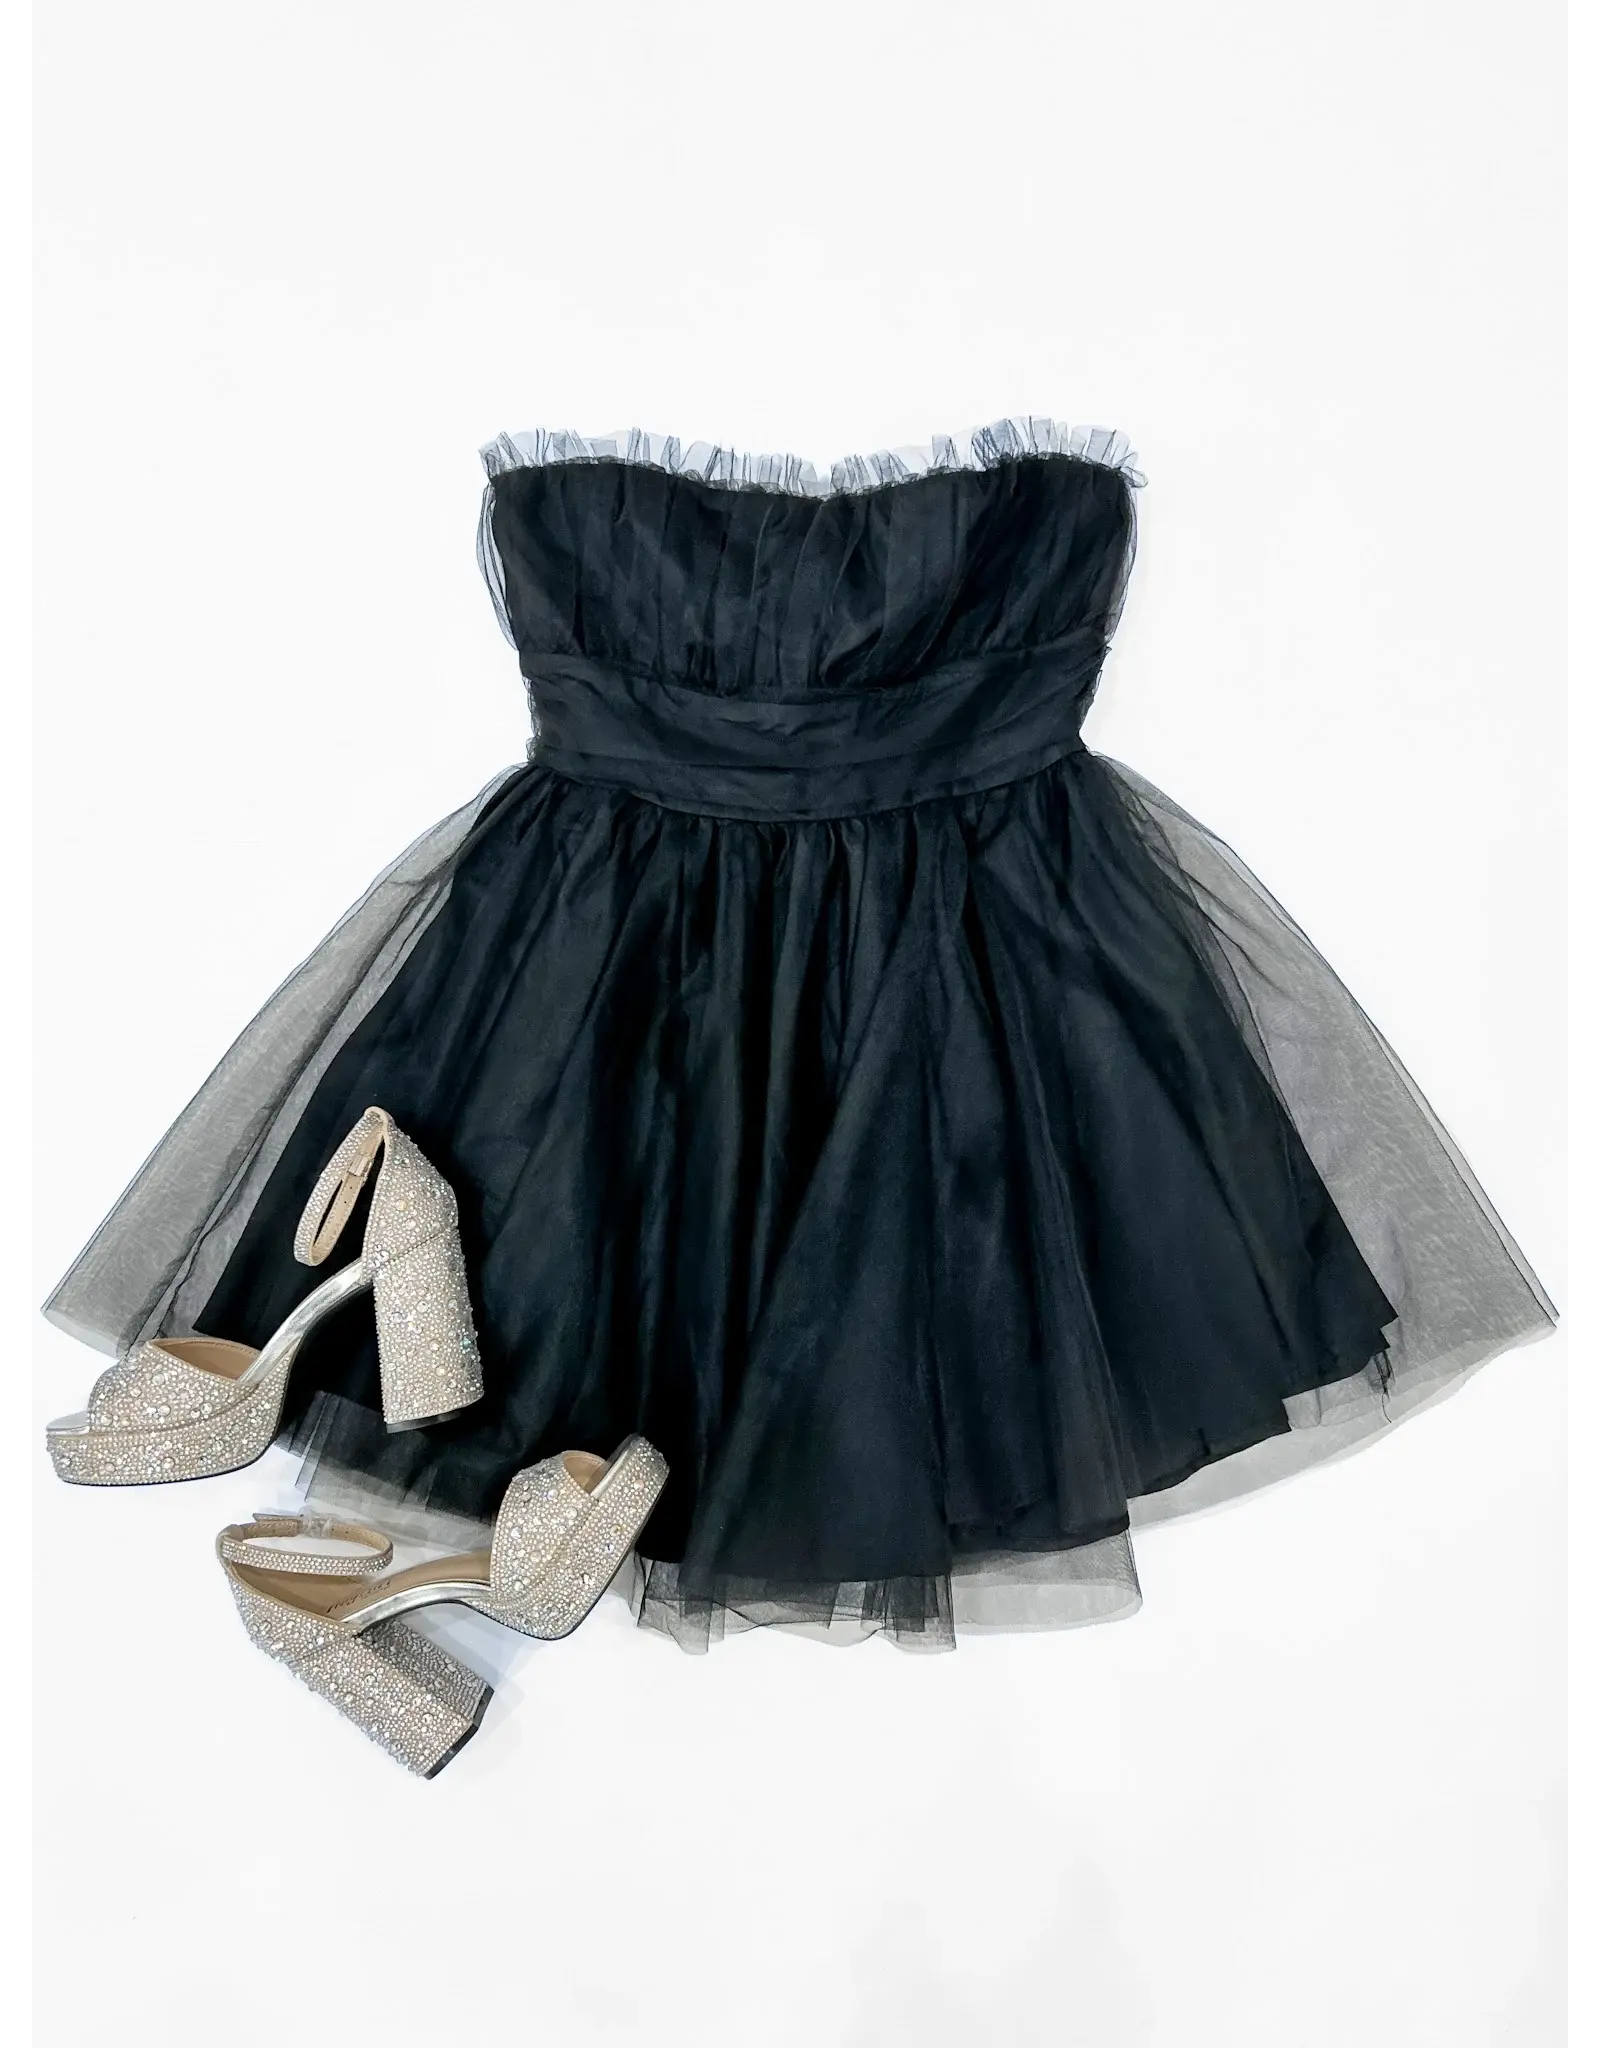 Black Strapless Tulle Dress